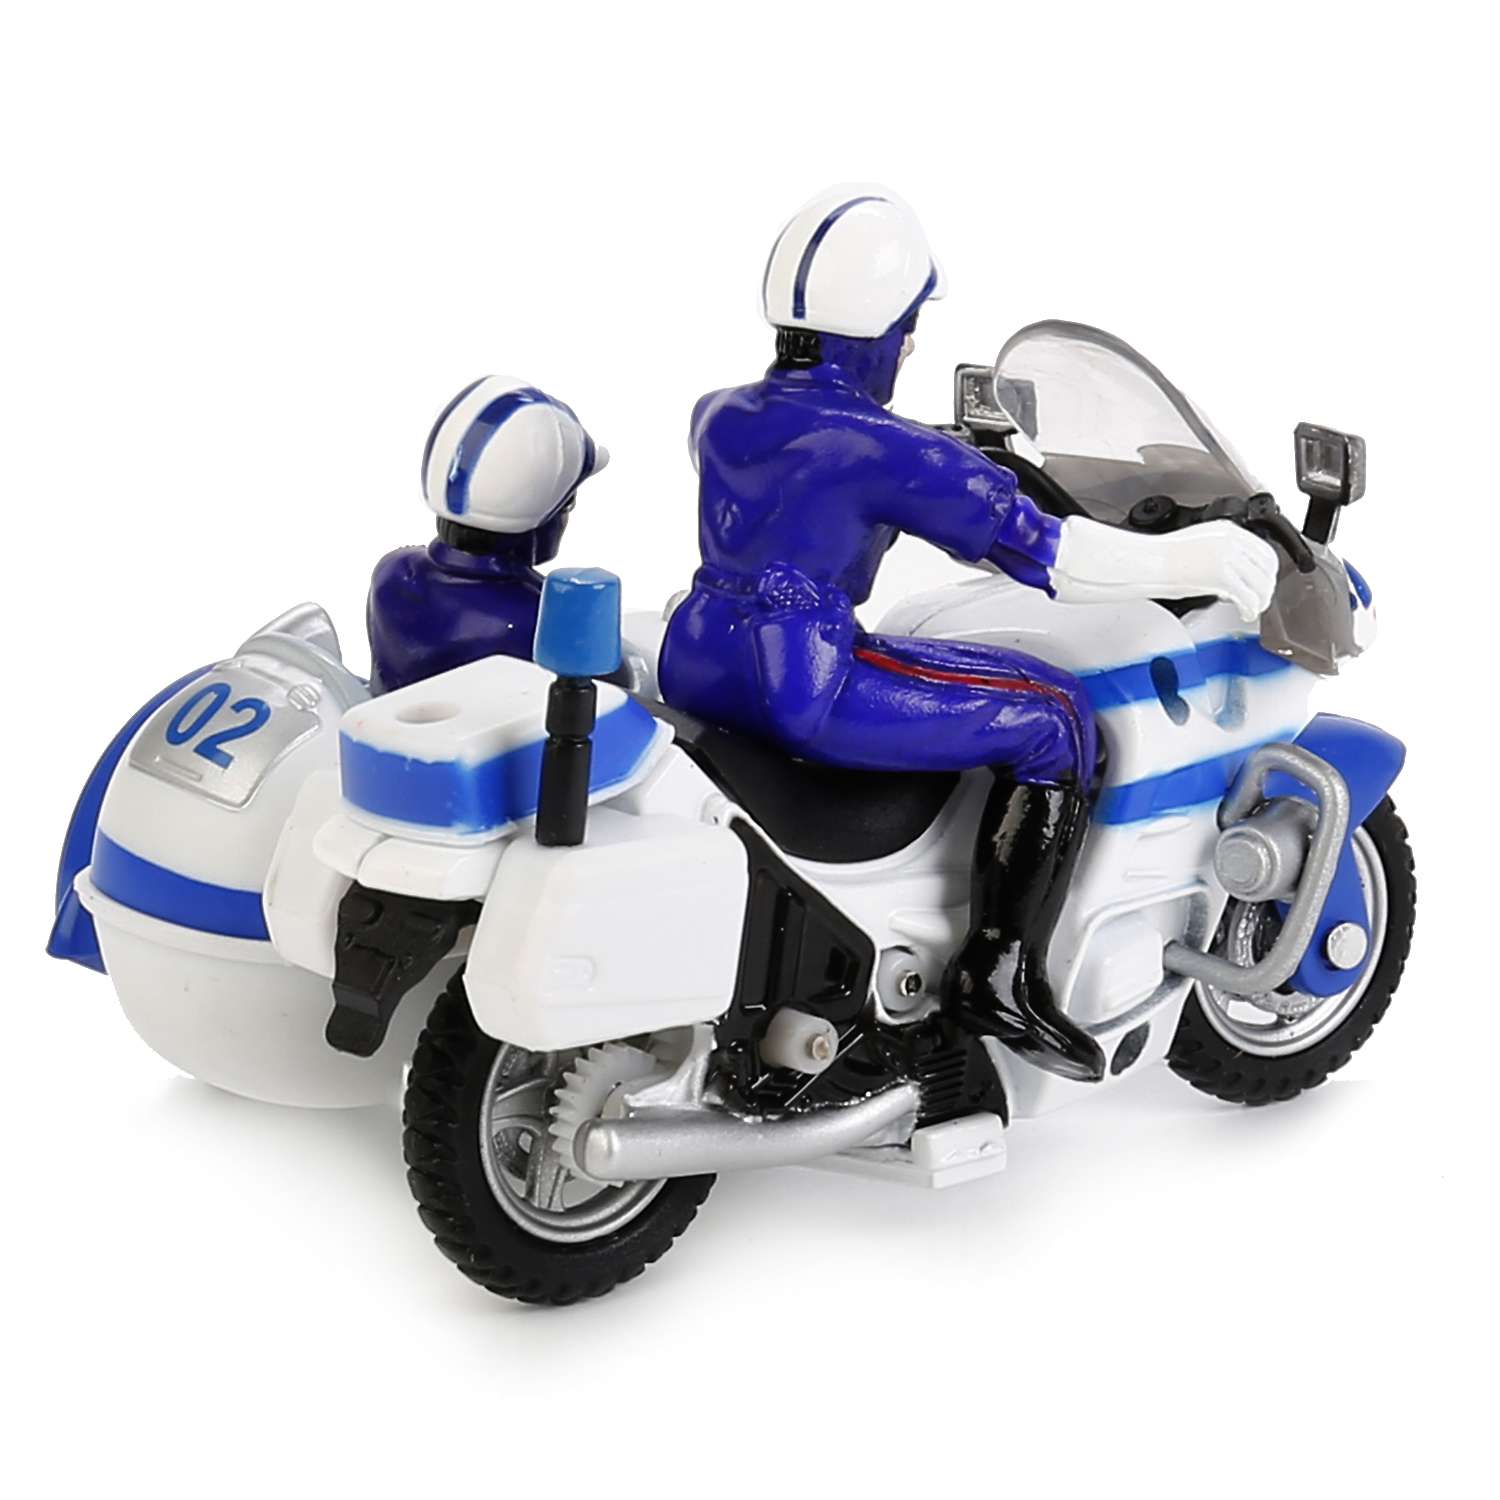 Мотоцикл Технопарк полиция 144876/CT-124-2 144876/CT-1247-2 - фото 4